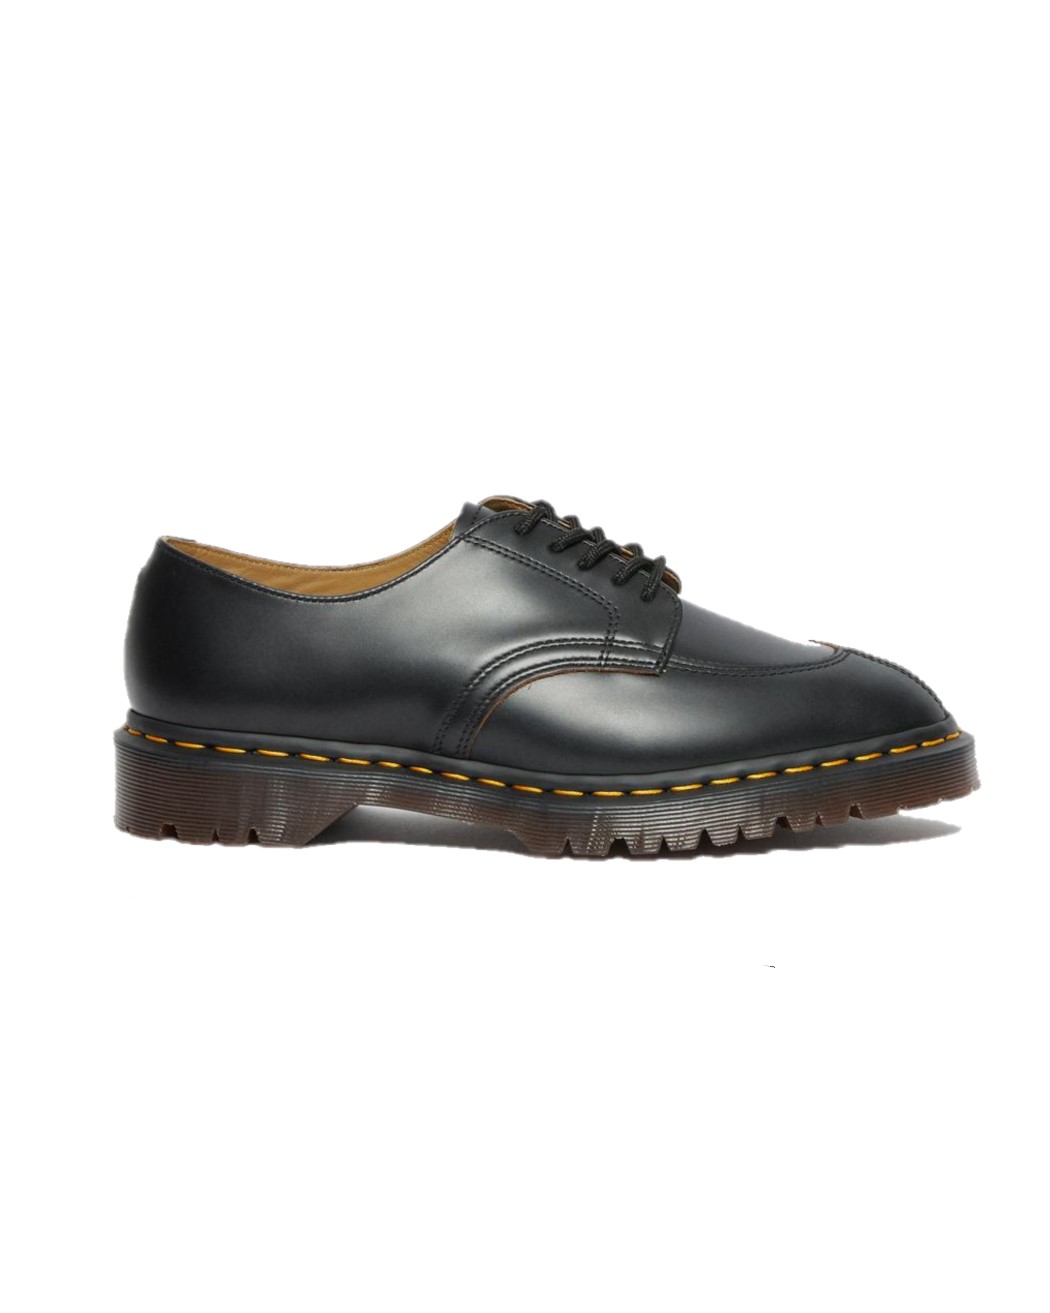 dr-martens-2046-vintage-smooth-zapato-black